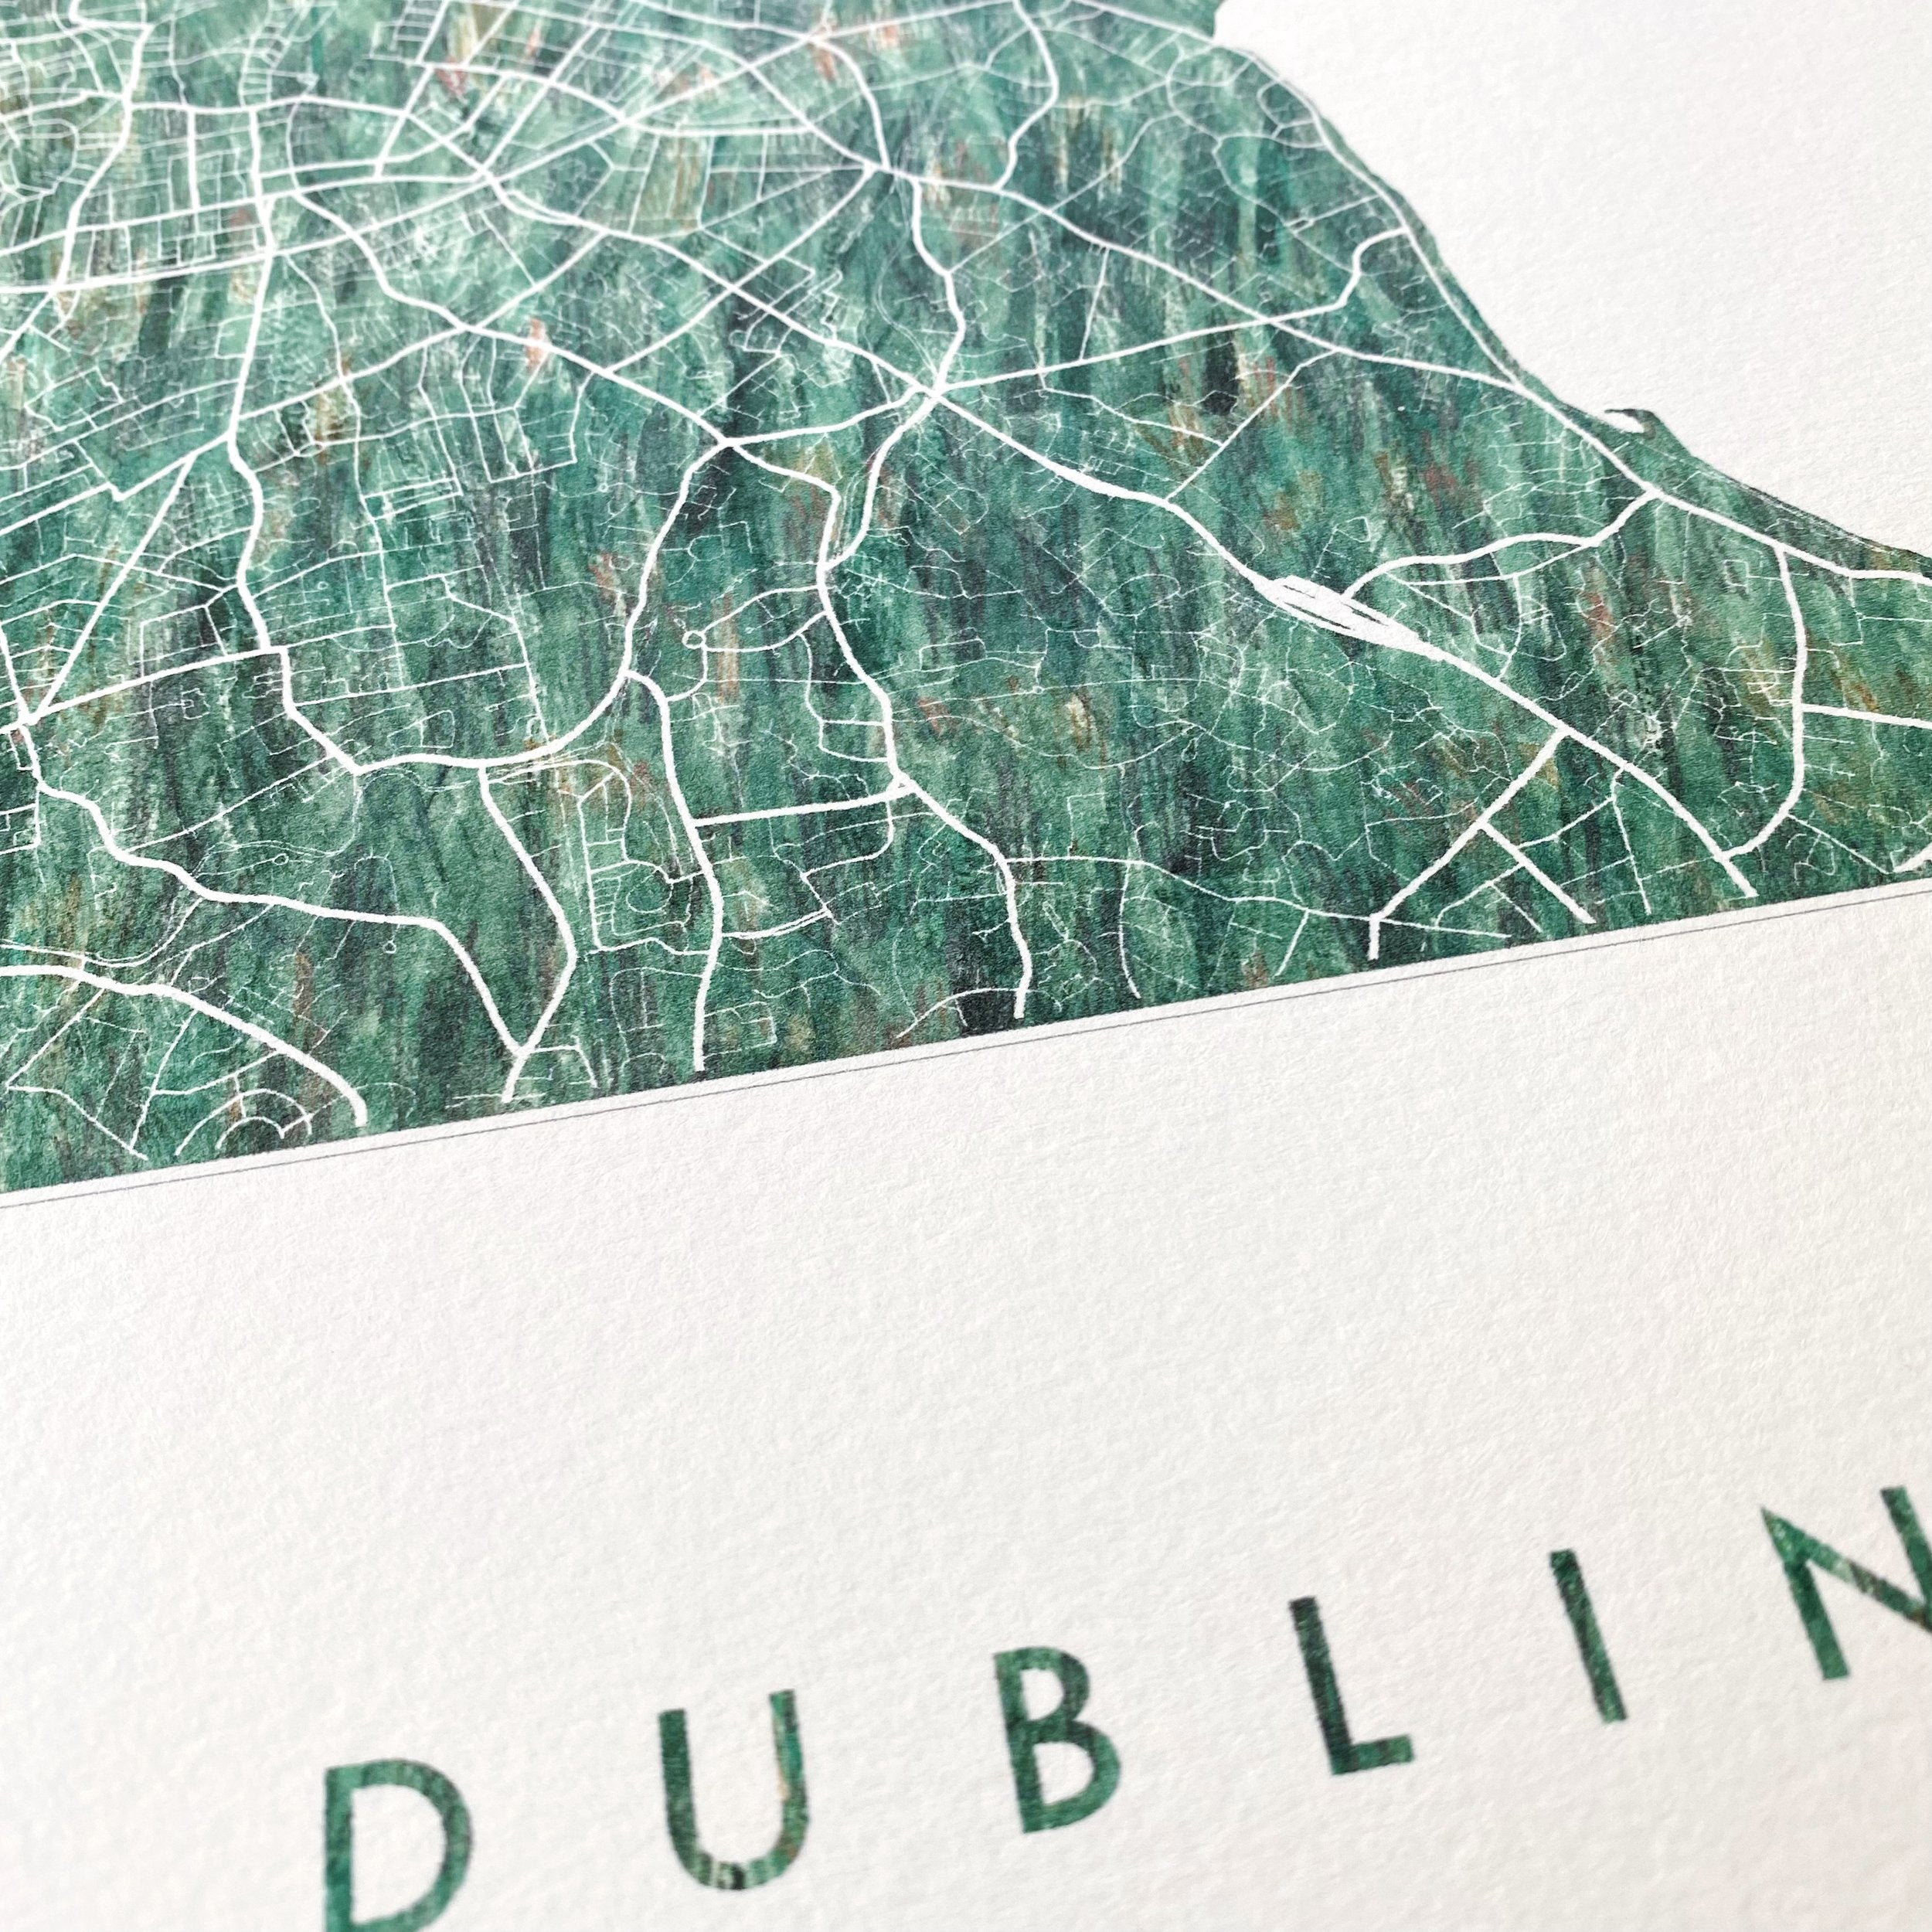 DUBLIN Urban Fabrics City Map: PRINT